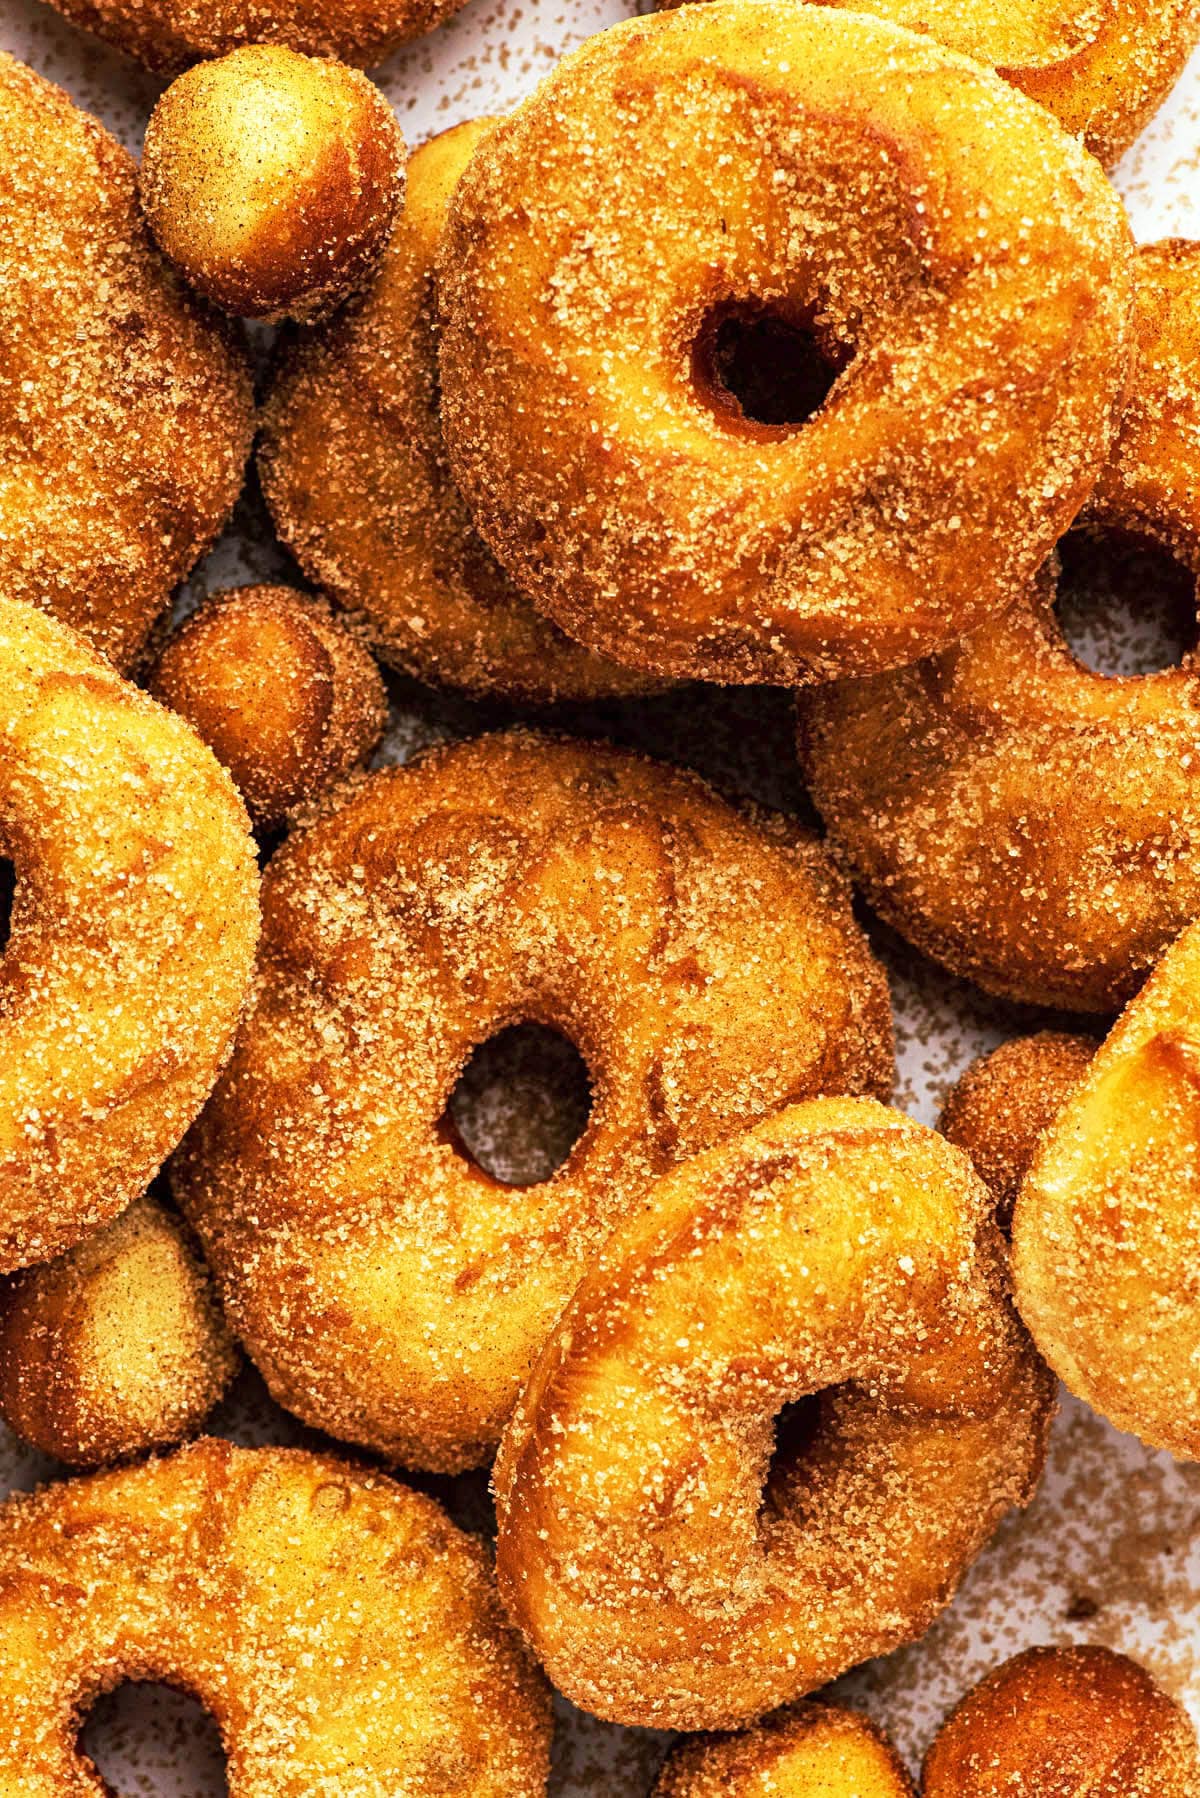 Close up of several cinnamon sugar donuts and donut holes.